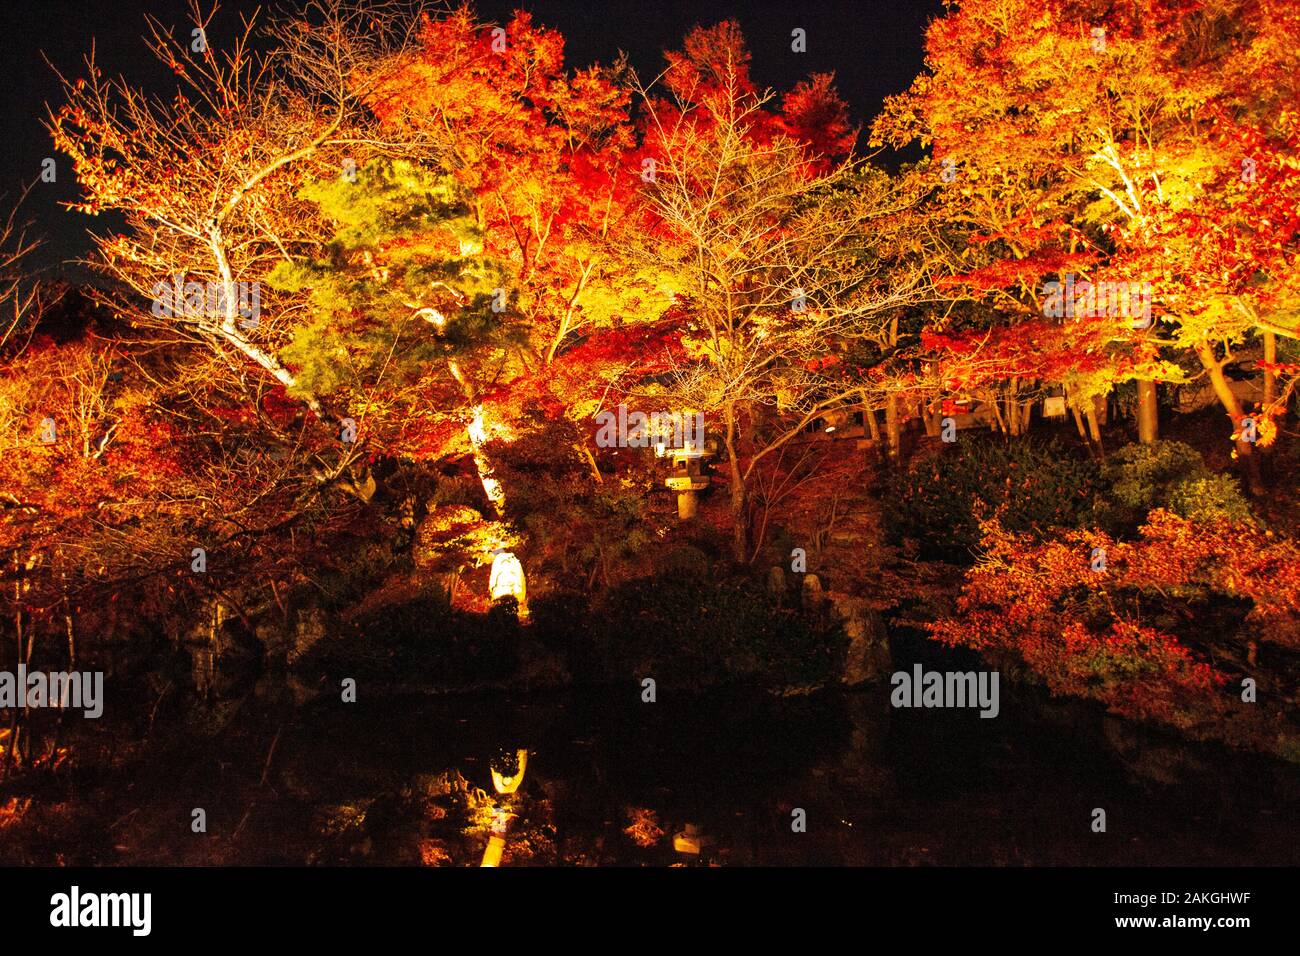 Nächtliche Beleuchtung in der Saison Kōyō" (Herbstlaub) Im Herbst wird der japanische Wald in leuchtenden Rot- und Orangentönen Dargestellt Stockfoto